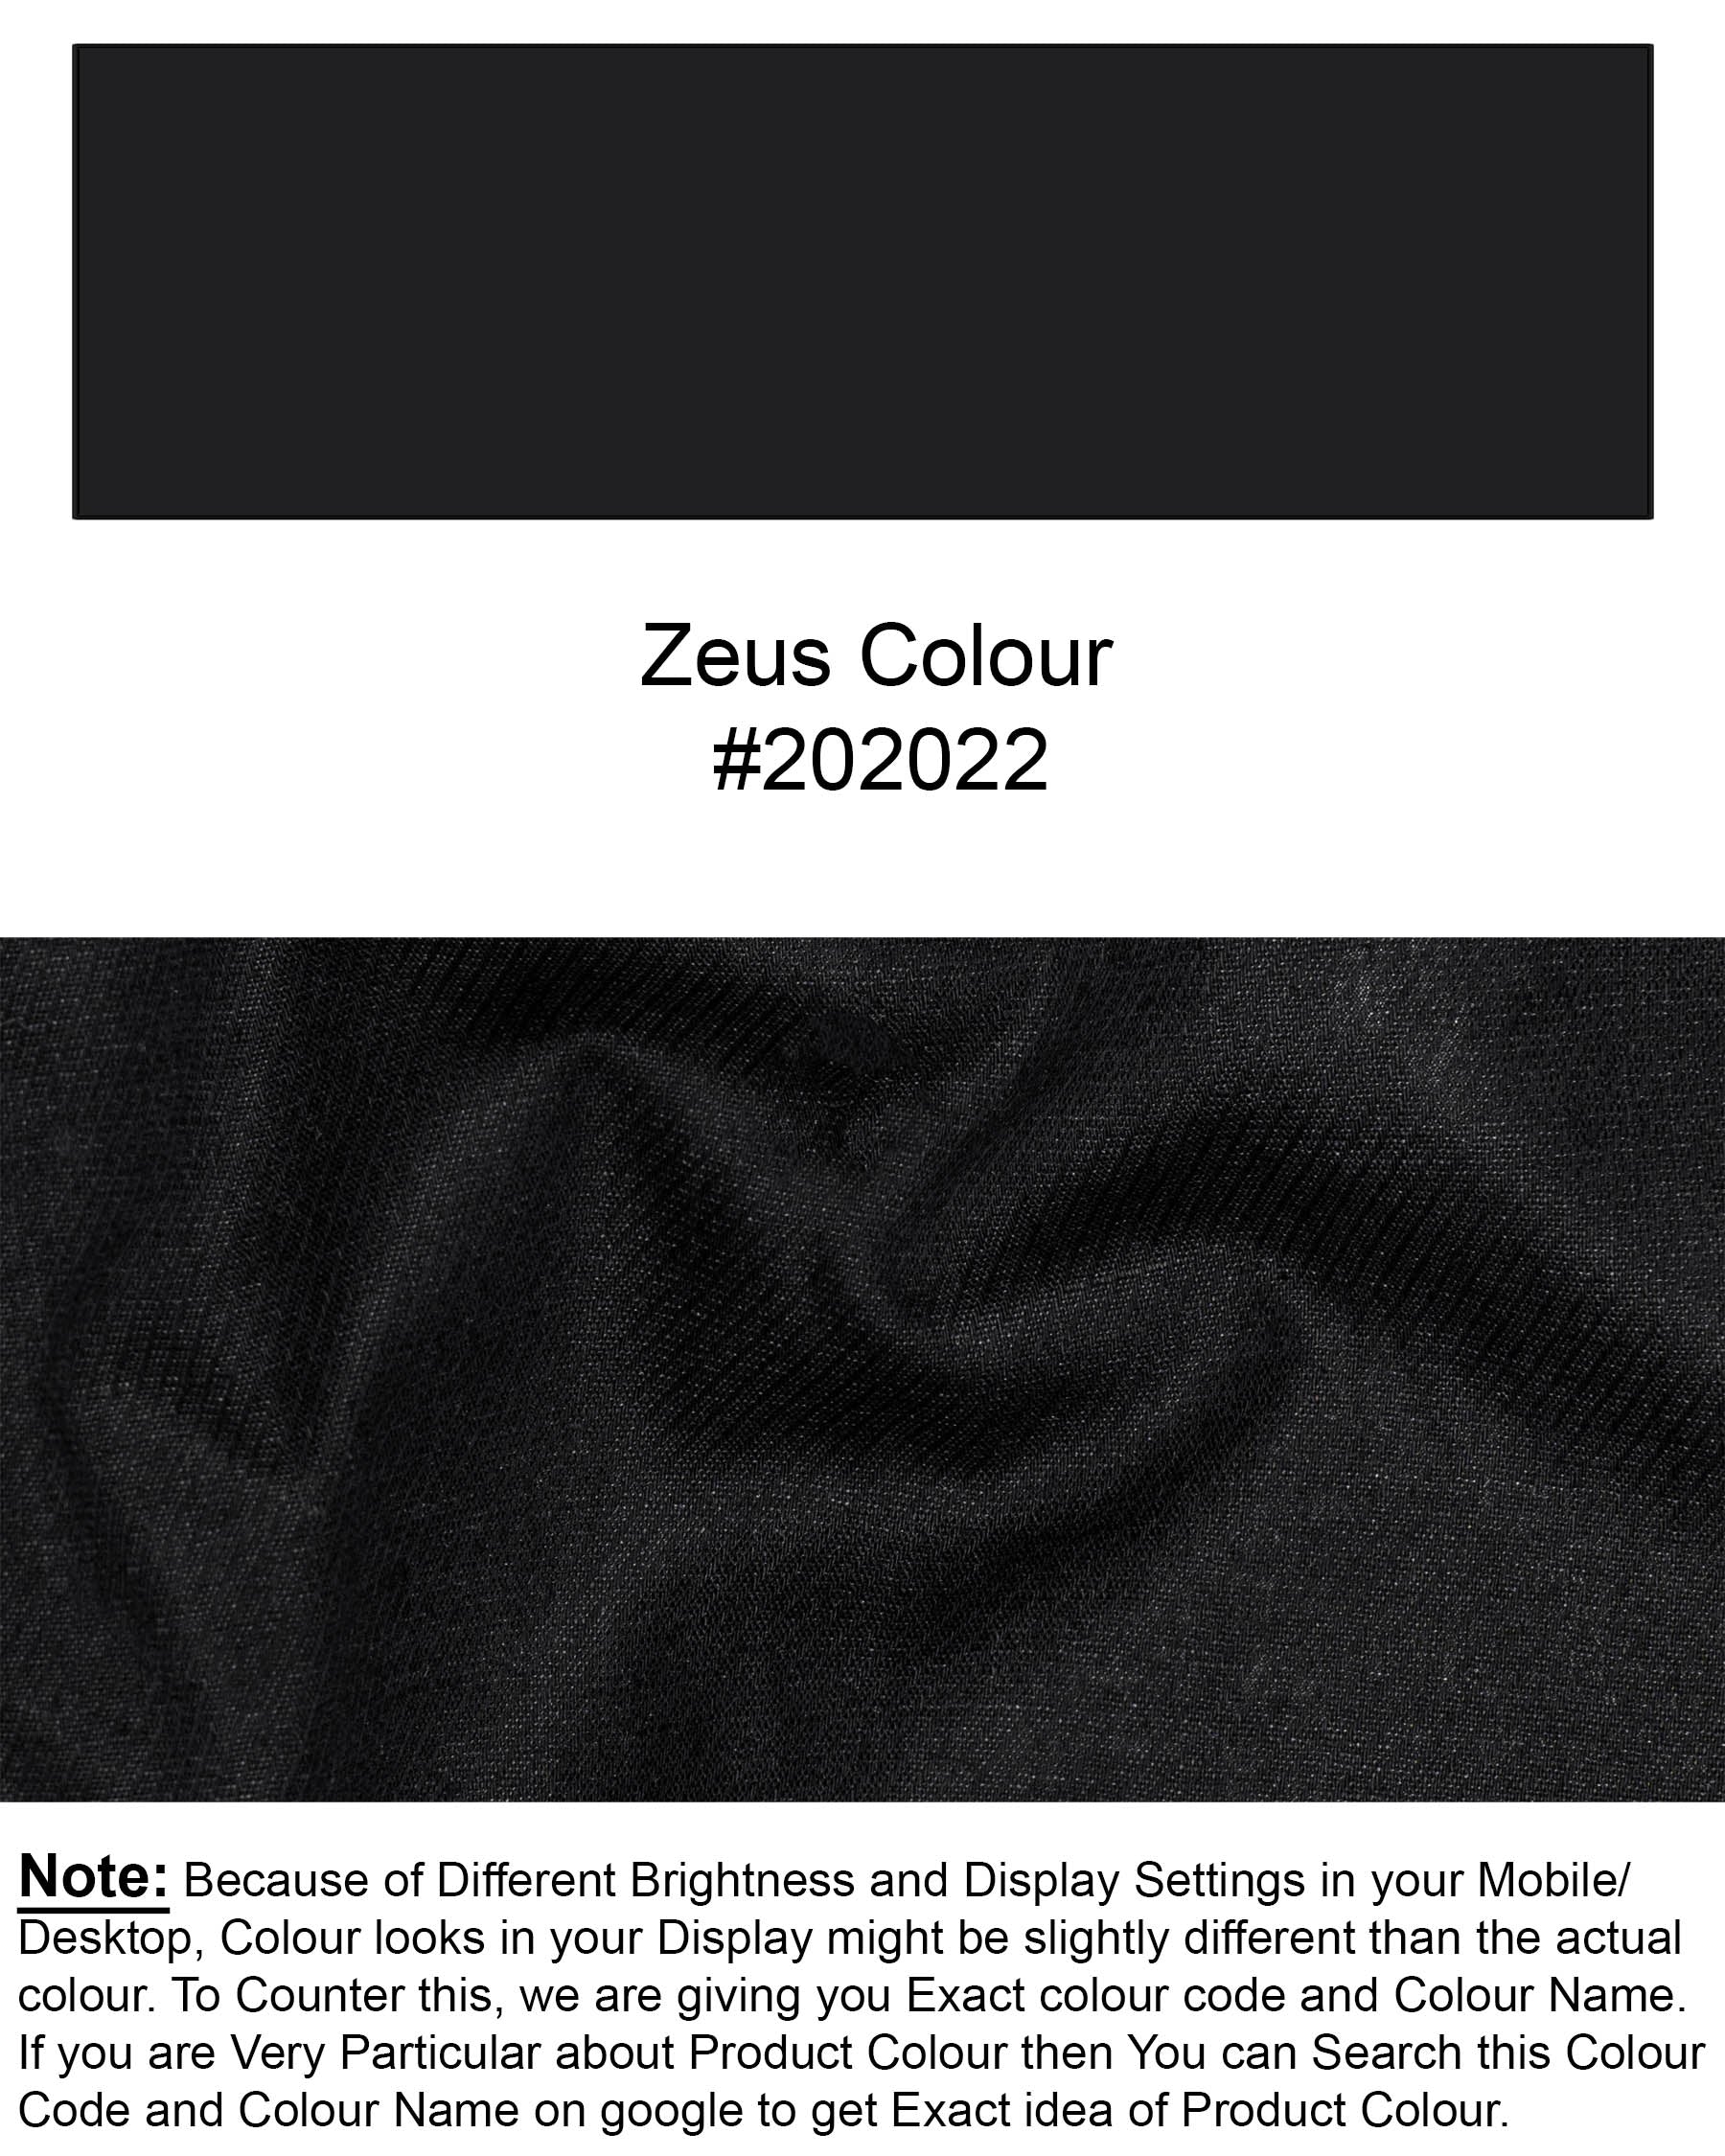 Zeus Black Heavyweight Luxurious Linen Shirt 6533-BD-38,6533-BD-H-38,6533-BD-39,6533-BD-H-39,6533-BD-40,6533-BD-H-40,6533-BD-42,6533-BD-H-42,6533-BD-44,6533-BD-H-44,6533-BD-46,6533-BD-H-46,6533-BD-48,6533-BD-H-48,6533-BD-50,6533-BD-H-50,6533-BD-52,6533-BD-H-52